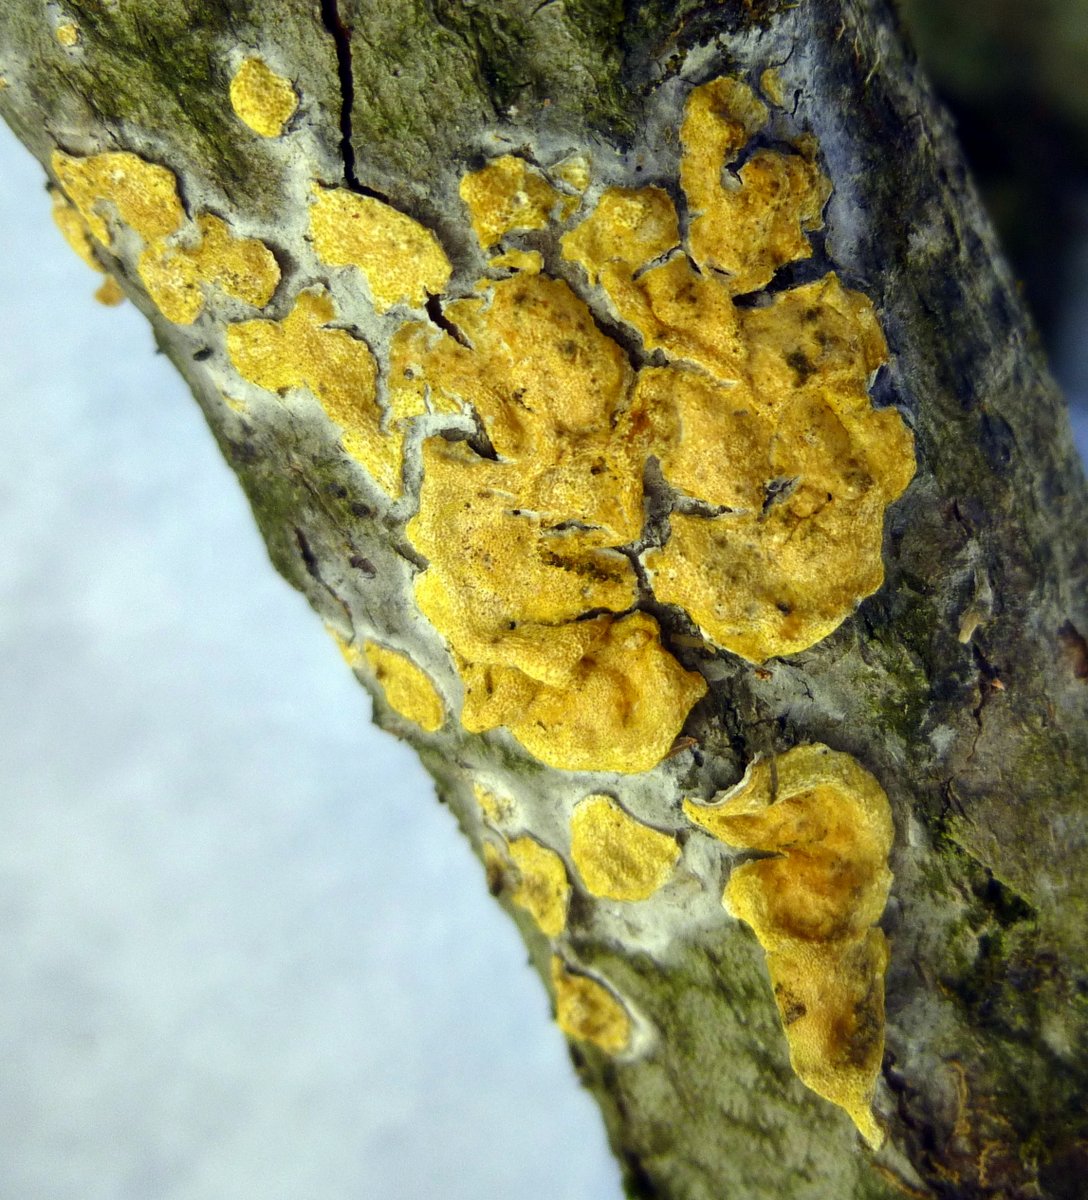 14. Yellow Crust Fungus